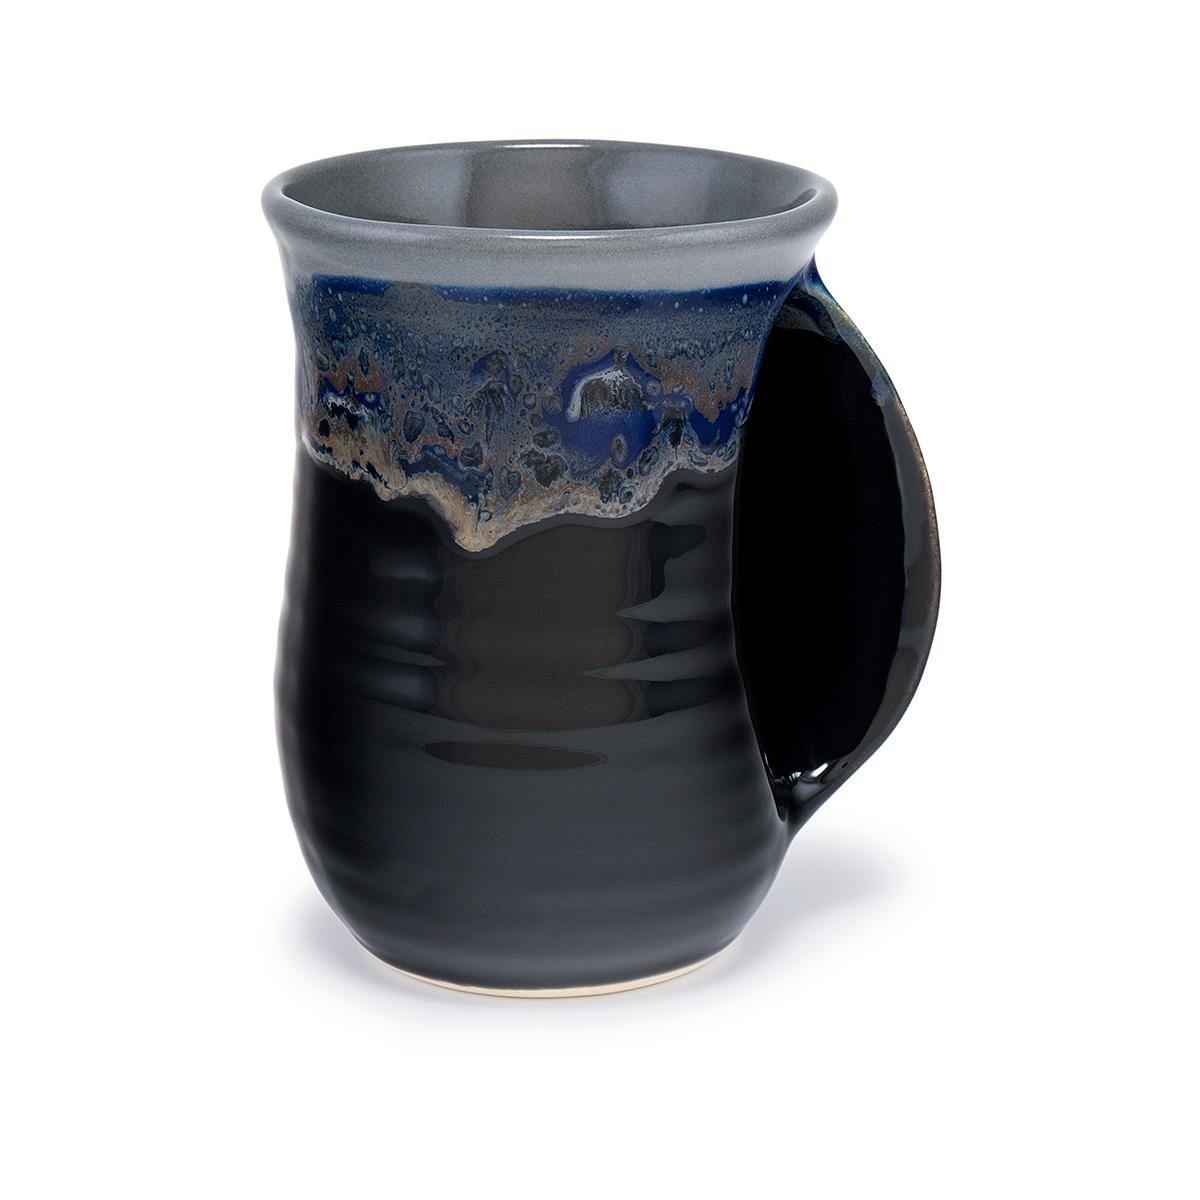  Collection I Handwarmer Mug